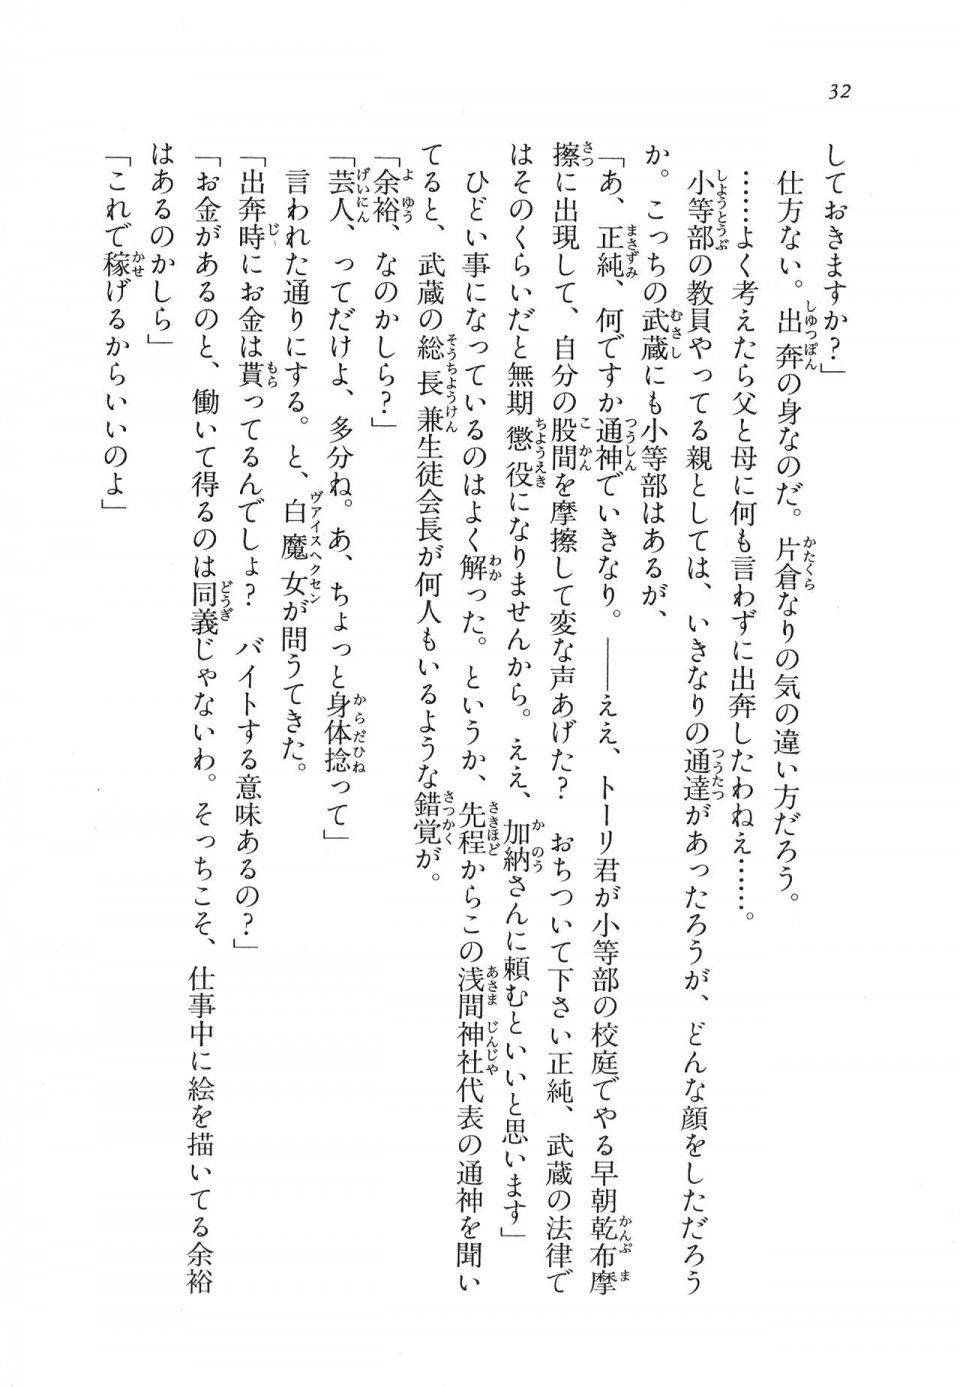 Kyoukai Senjou no Horizon LN Vol 11(5A) - Photo #33